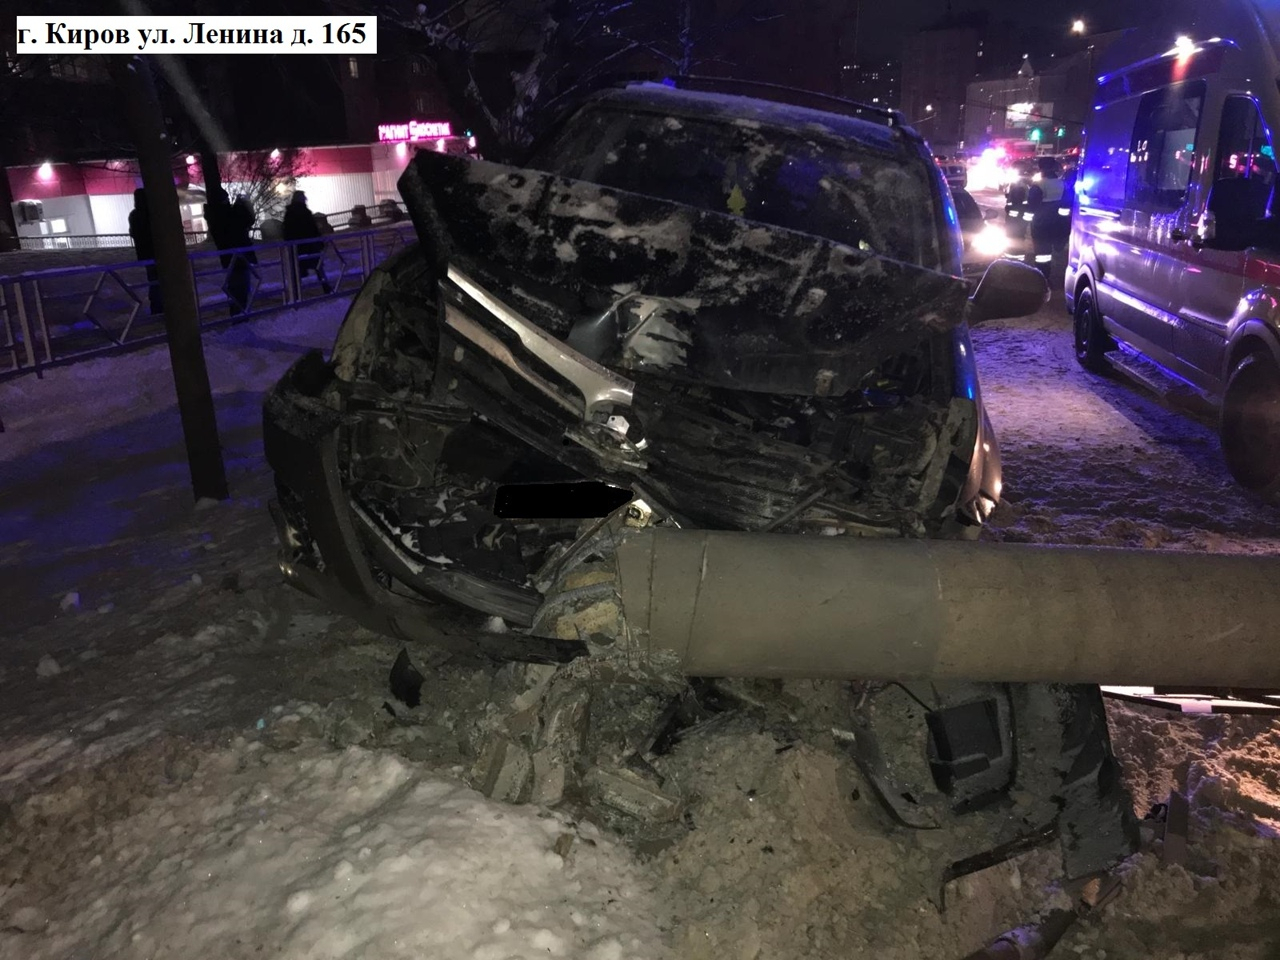 Водитель был пьян: появились подробности ДТП на Ленина, где иномарка снесла опору ЛЭП